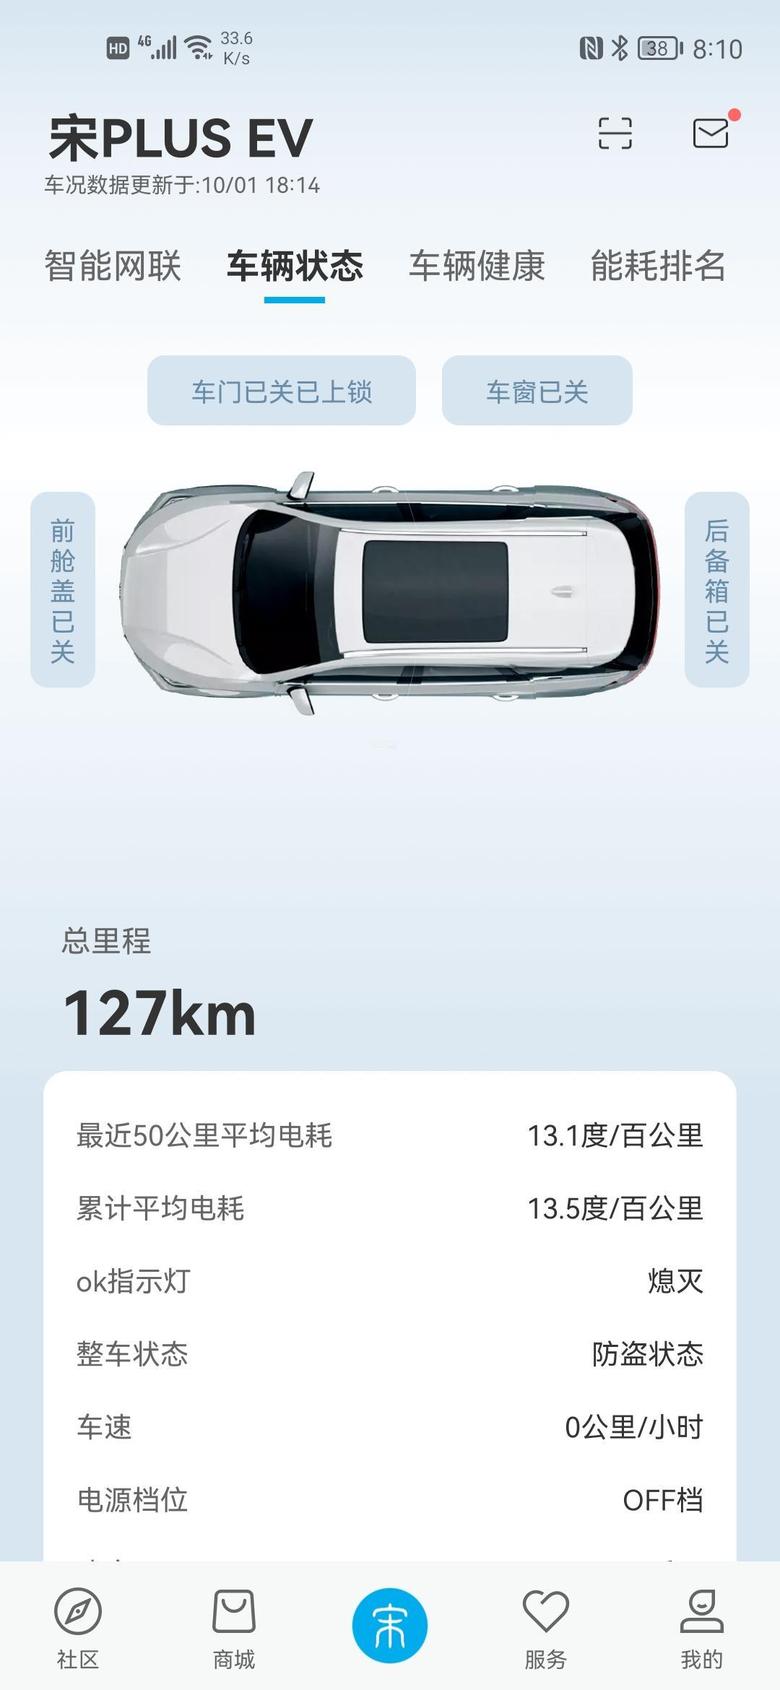 宋plus ev城市：广州车型：比亚迪宋plusev尊贵能耗：百公里13.1度电满油满电续航里程：按照目前的用电，是547公里。但是没有完全跑完过。驾驶小技巧：eco+标准回馈，平均时速80。